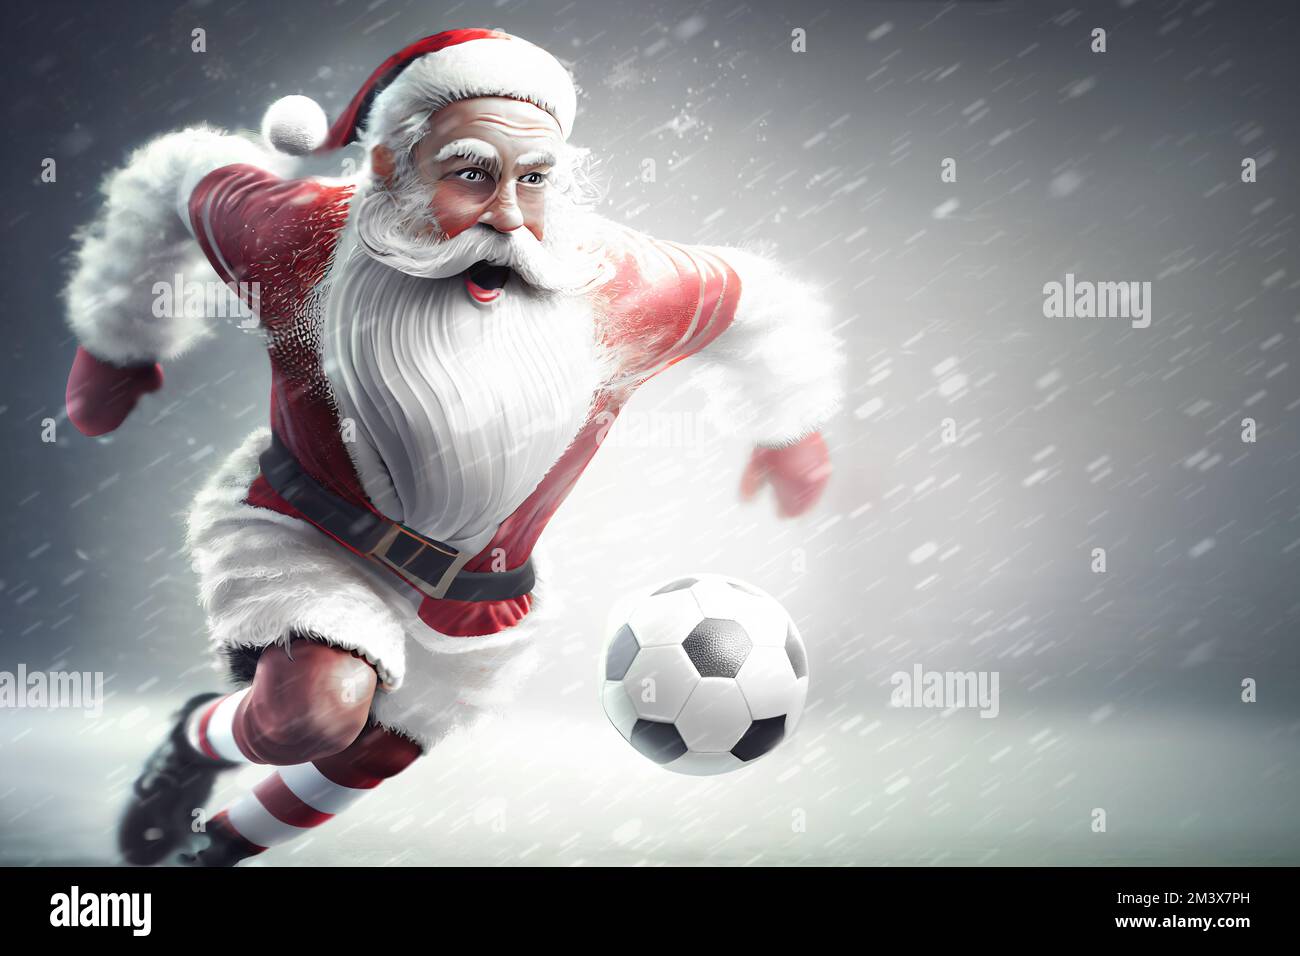 Der Weihnachtsmann ist ein Fußballspieler, der Fußball spielt und im Schnee  über ein Fußballfeld läuft und mit einem Fußball spielt Stockfotografie -  Alamy